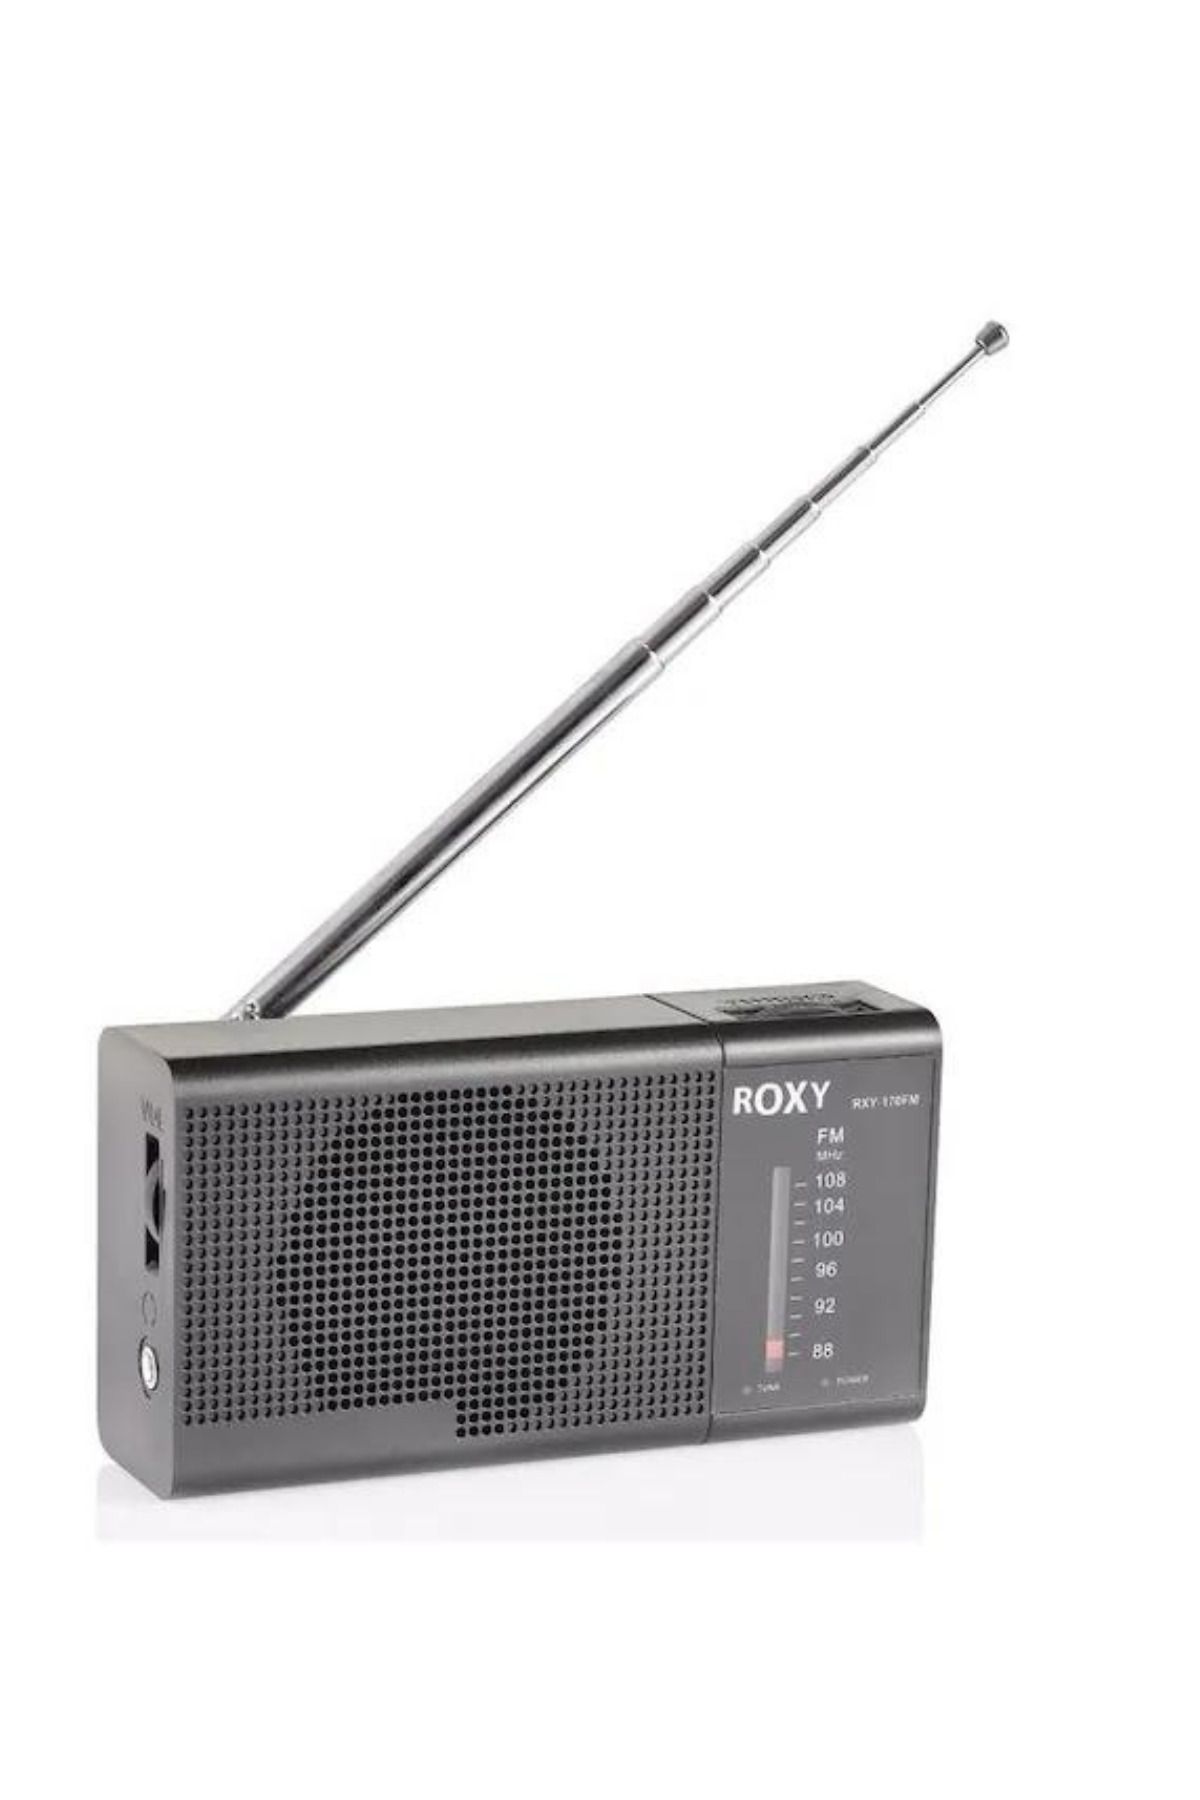 L'eDoren Roxy RXY-170FM Cep Tipi Mini Radyo